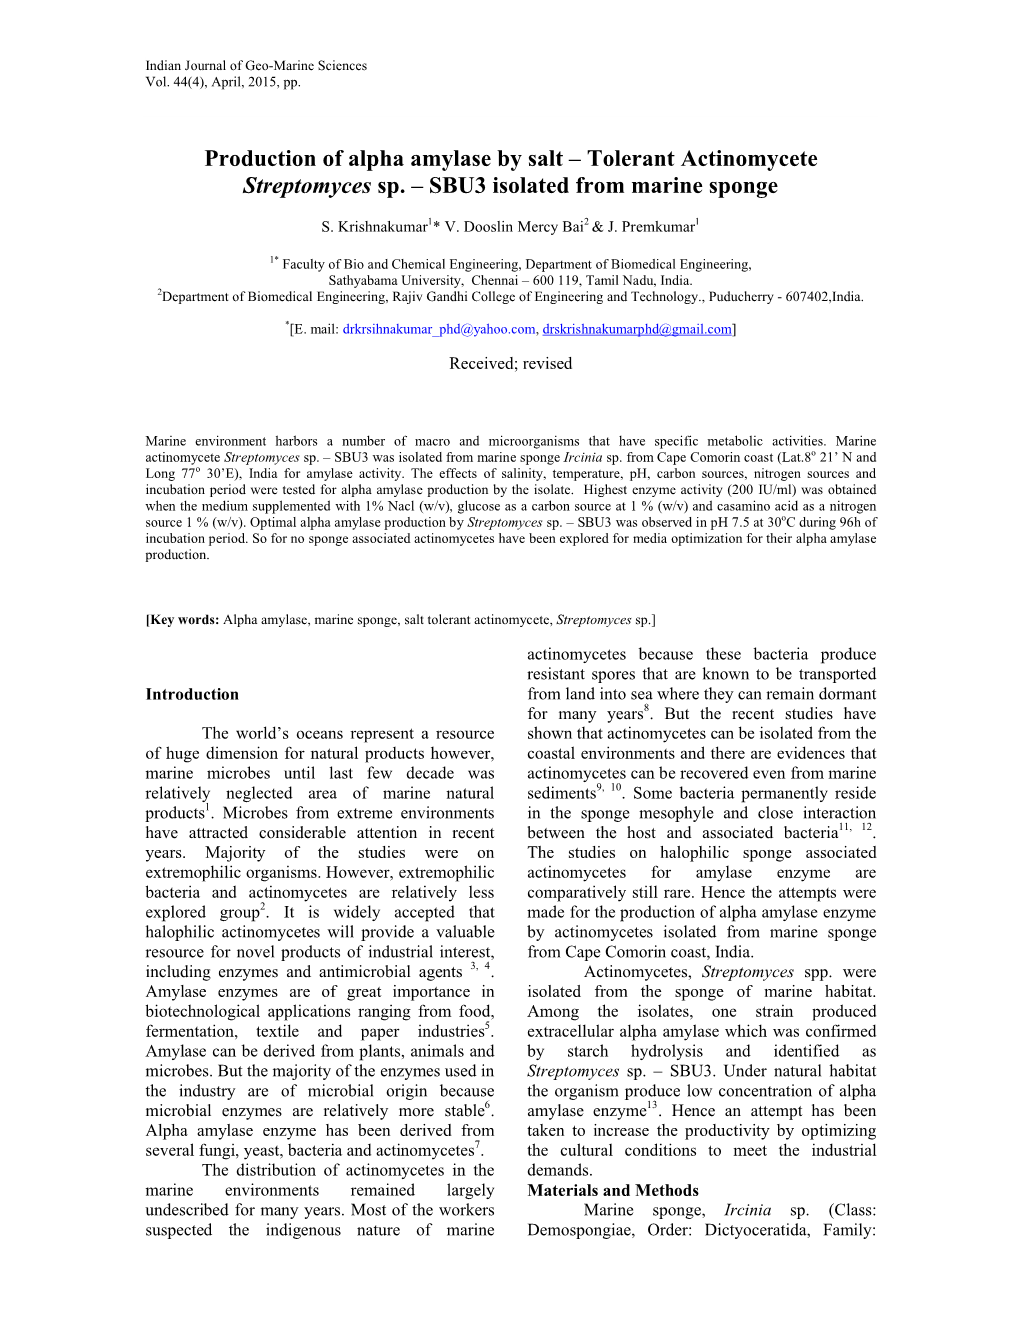 Production of Alpha Amylase by Salt – Tolerant Actinomycete Streptomyces Sp. – SBU3 Isolated from Marine Sponge